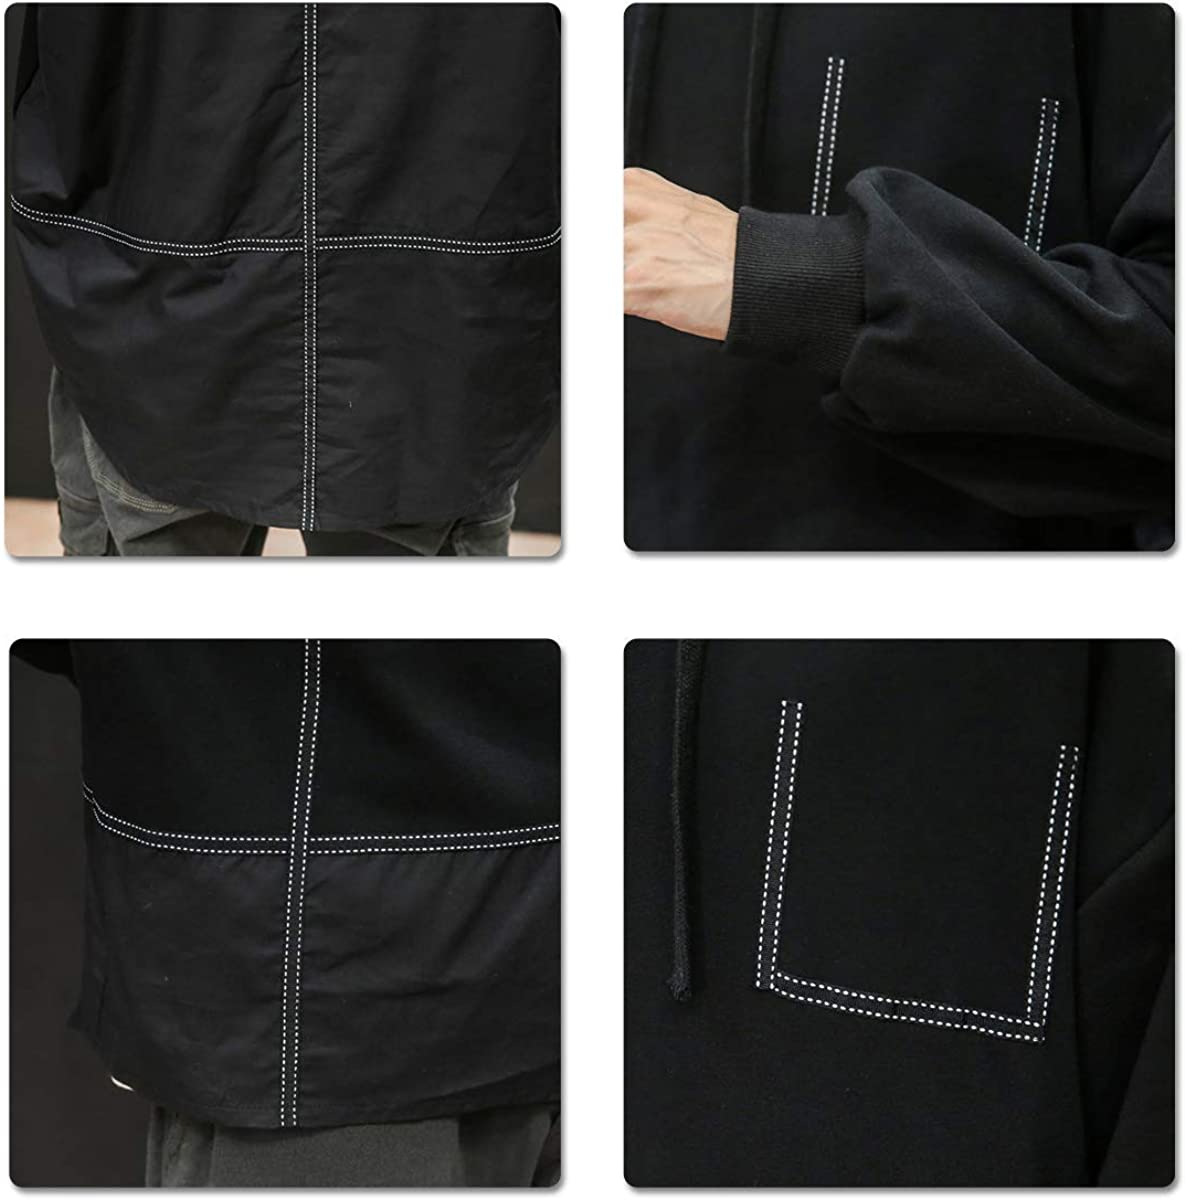 メンズ パーカー 長袖 綿 フード付き ゆったり シンプル 大きいサイズ お洒落 カジュアル 紐調整 黒